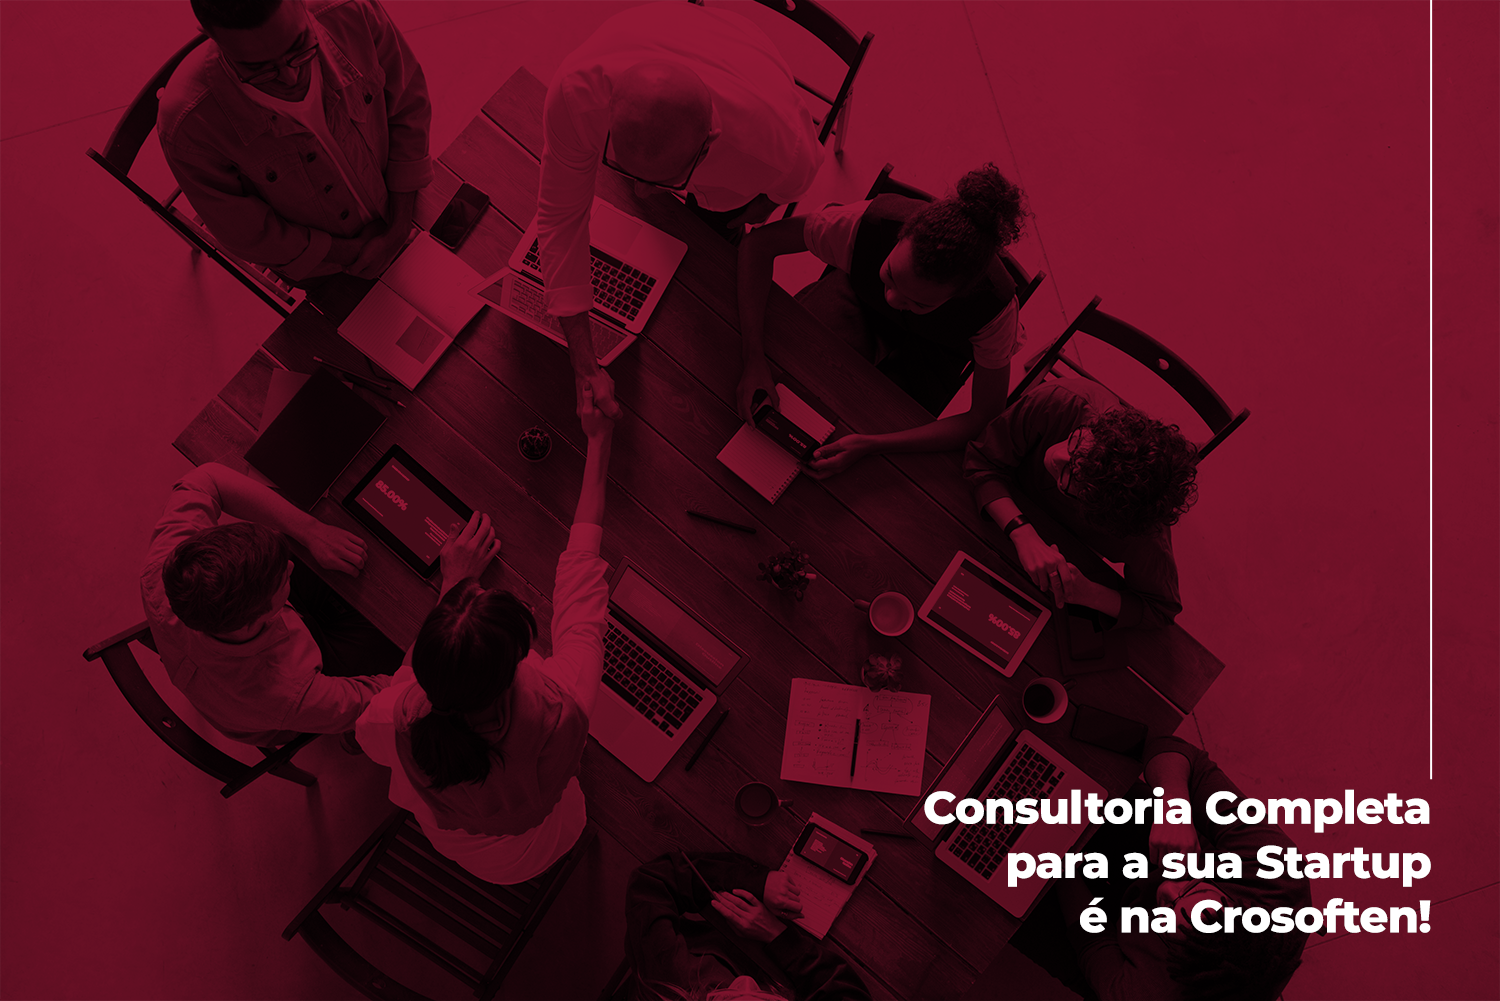 Consultoria completa para a sua Startup é na Crosoften! Juntos, vamos transformar a sua ideia em um negócio de sucesso.